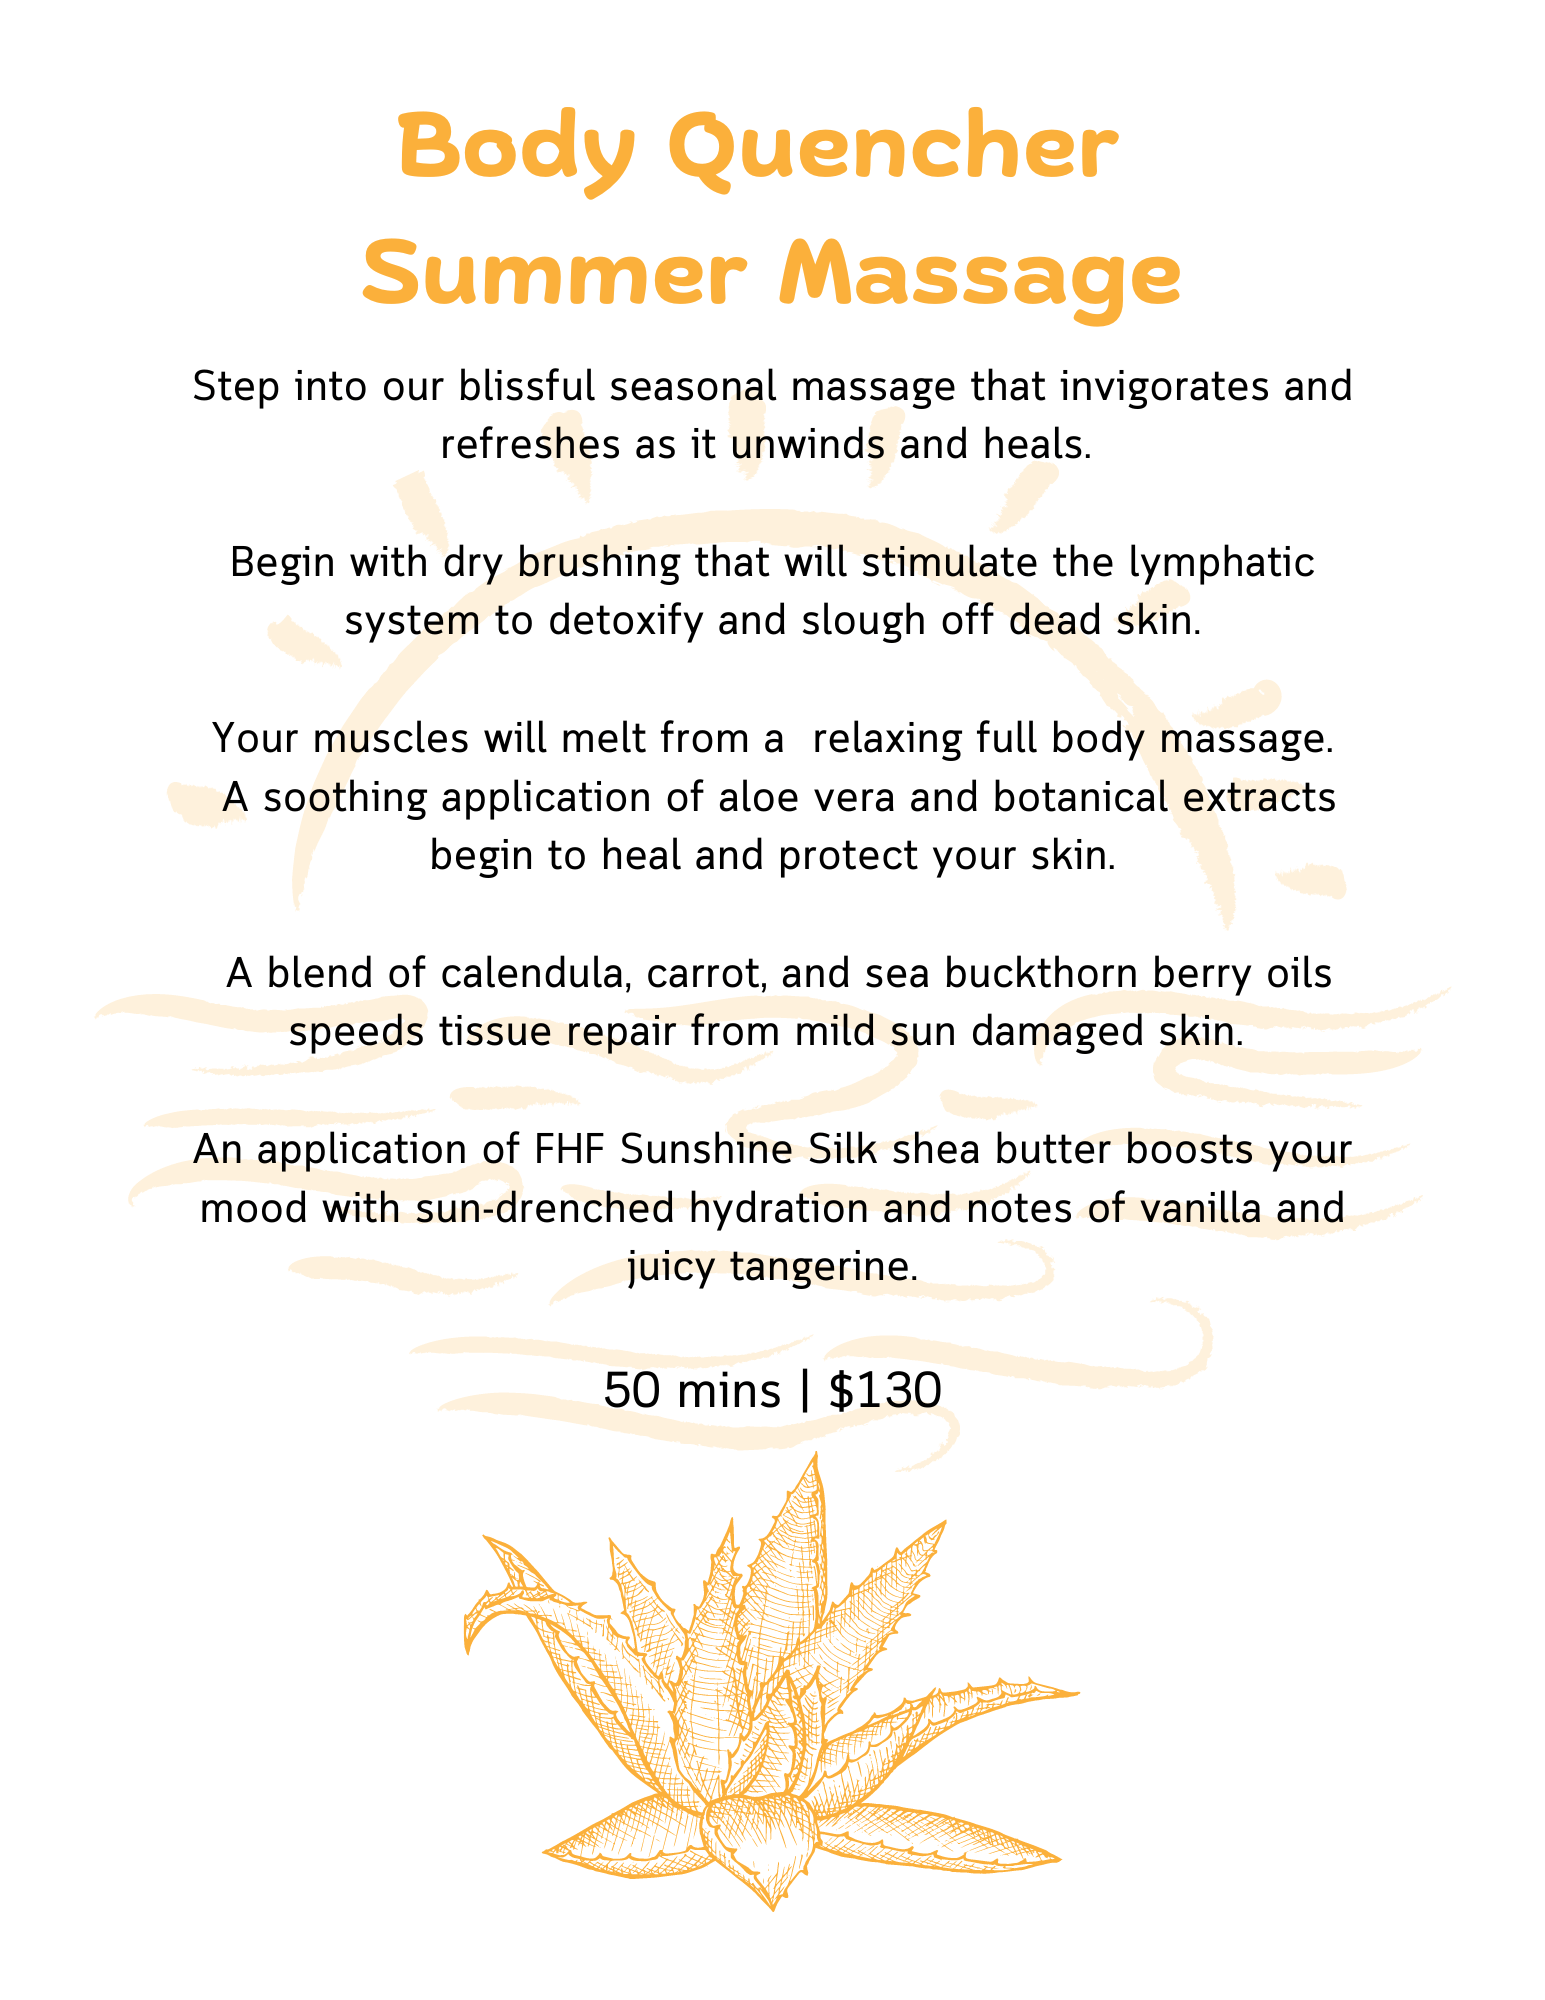 Body Quencher Summer Massage